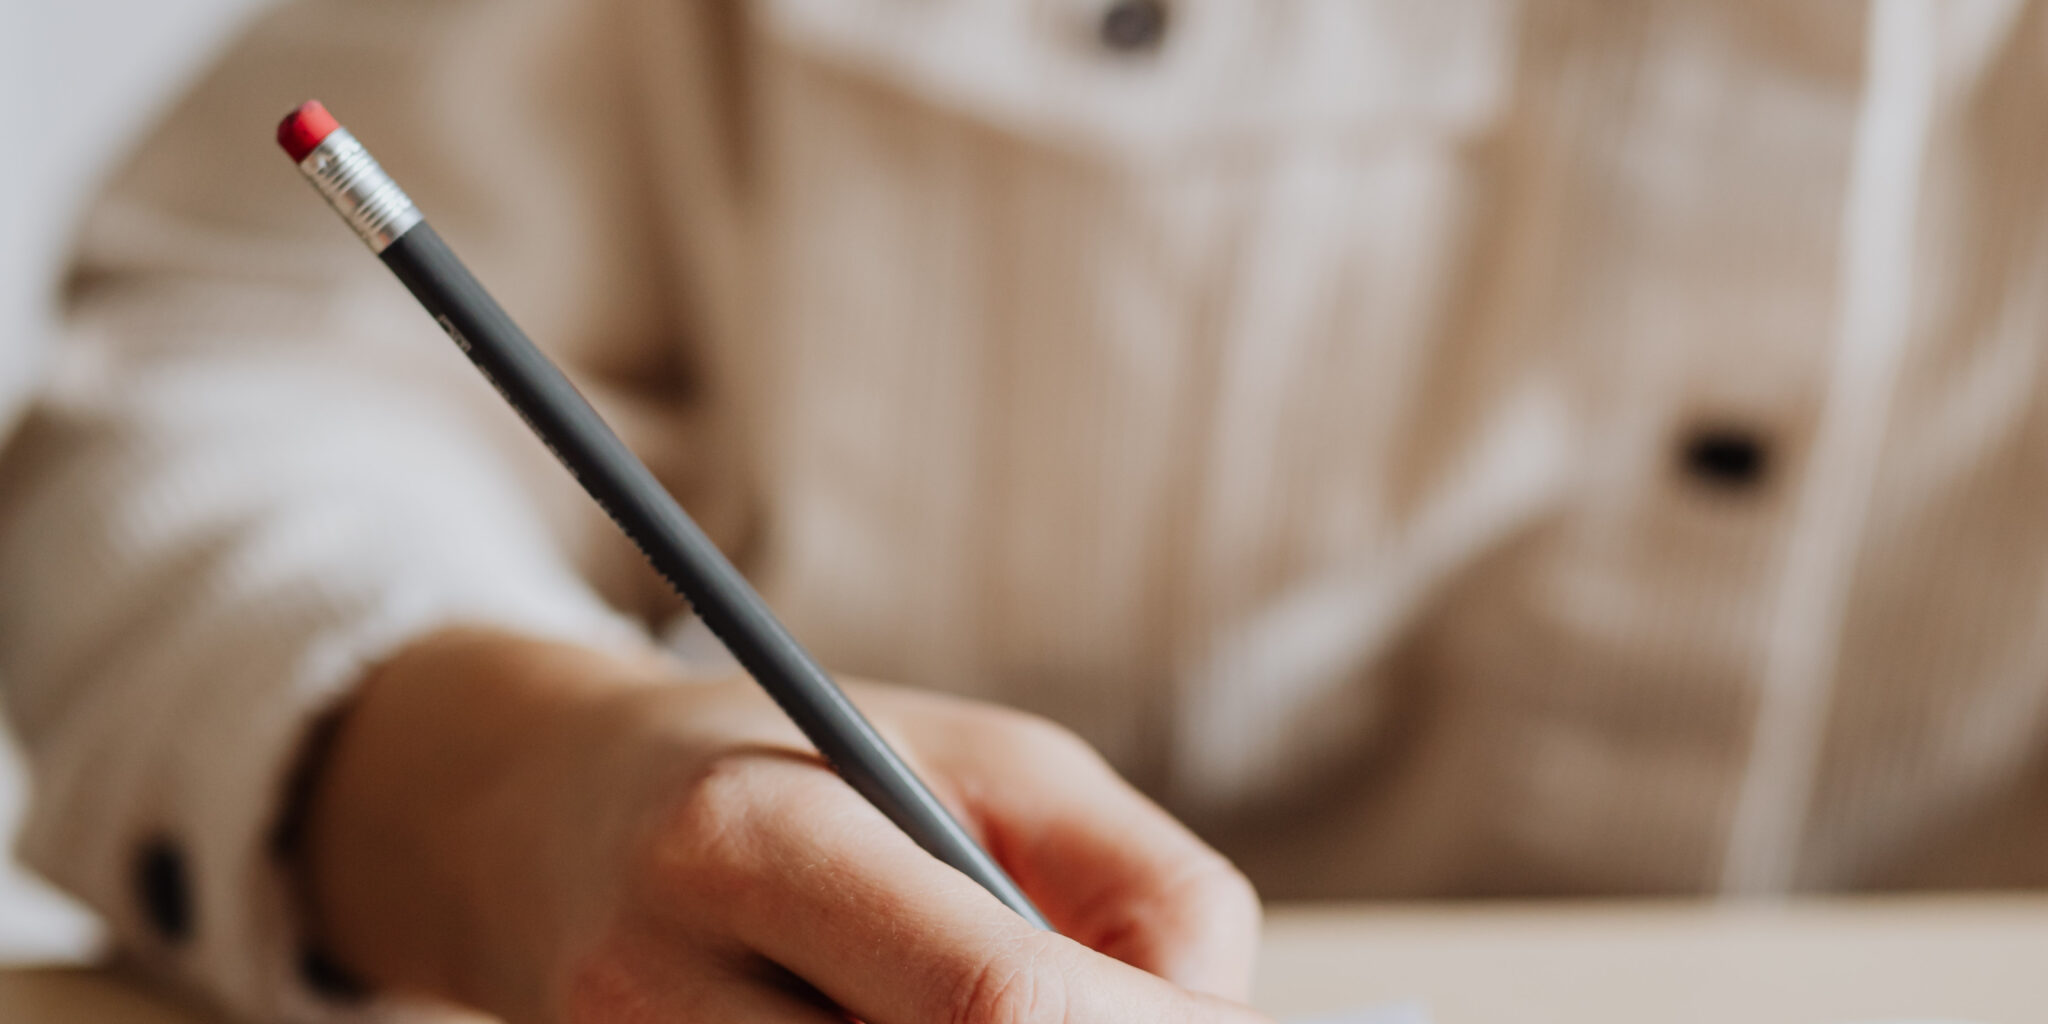 Das Bild einer Frauenhand, die einen Stift hält und schreibt, symbolisiert das Schreiben einer Tagline. Dieses Bild leitet den Blogbeitrag mit dem Titel "Was ist eine Tagline? Schritt-für-Schritt-Anleitung plus 50 Beispiele" ein.